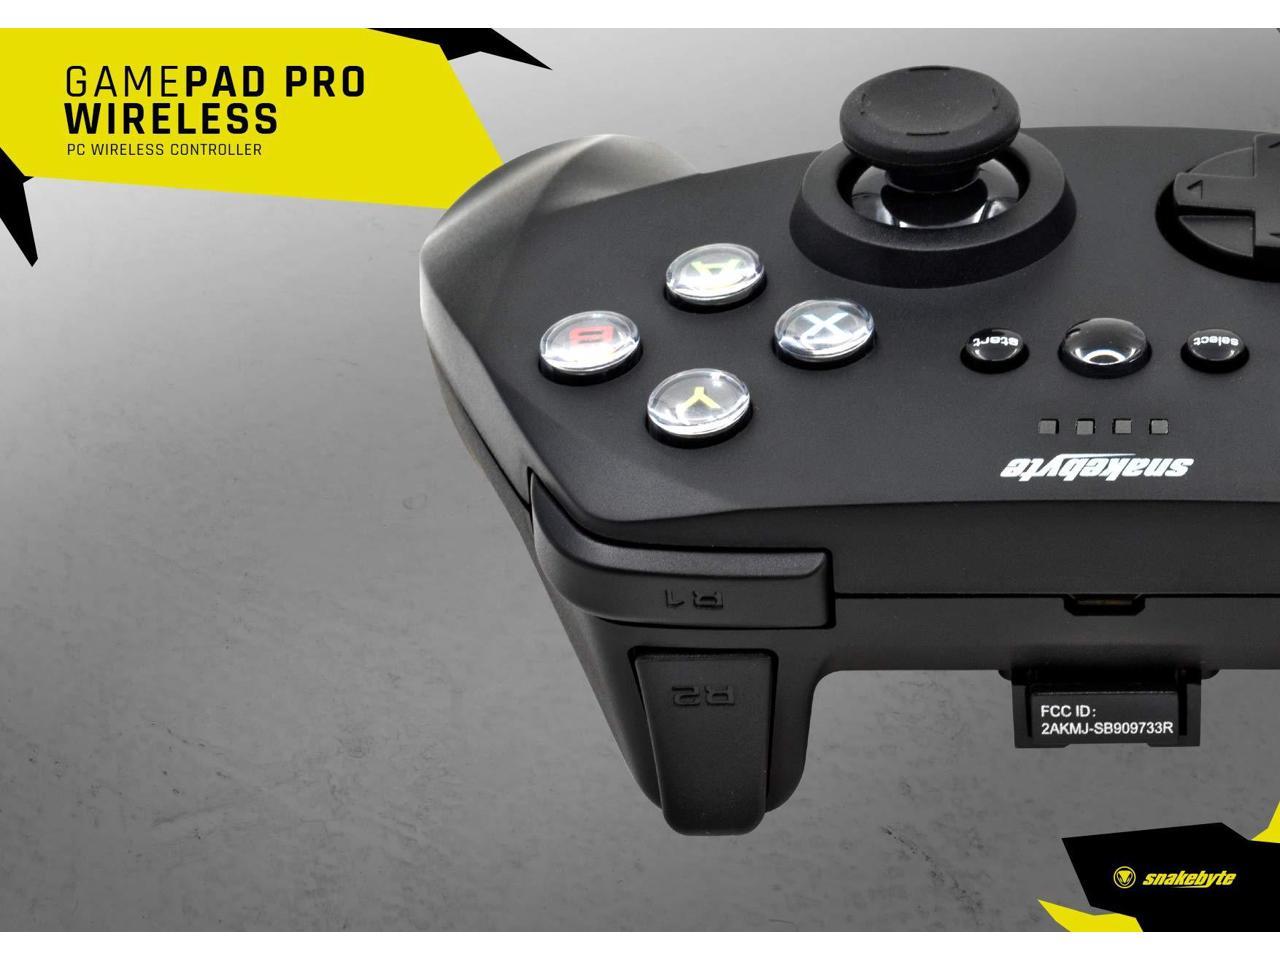 te rechtvaardigen Verzadigen Knooppunt Snakebyte PC Game: Pad Pro Wireless Controller - Newegg.com